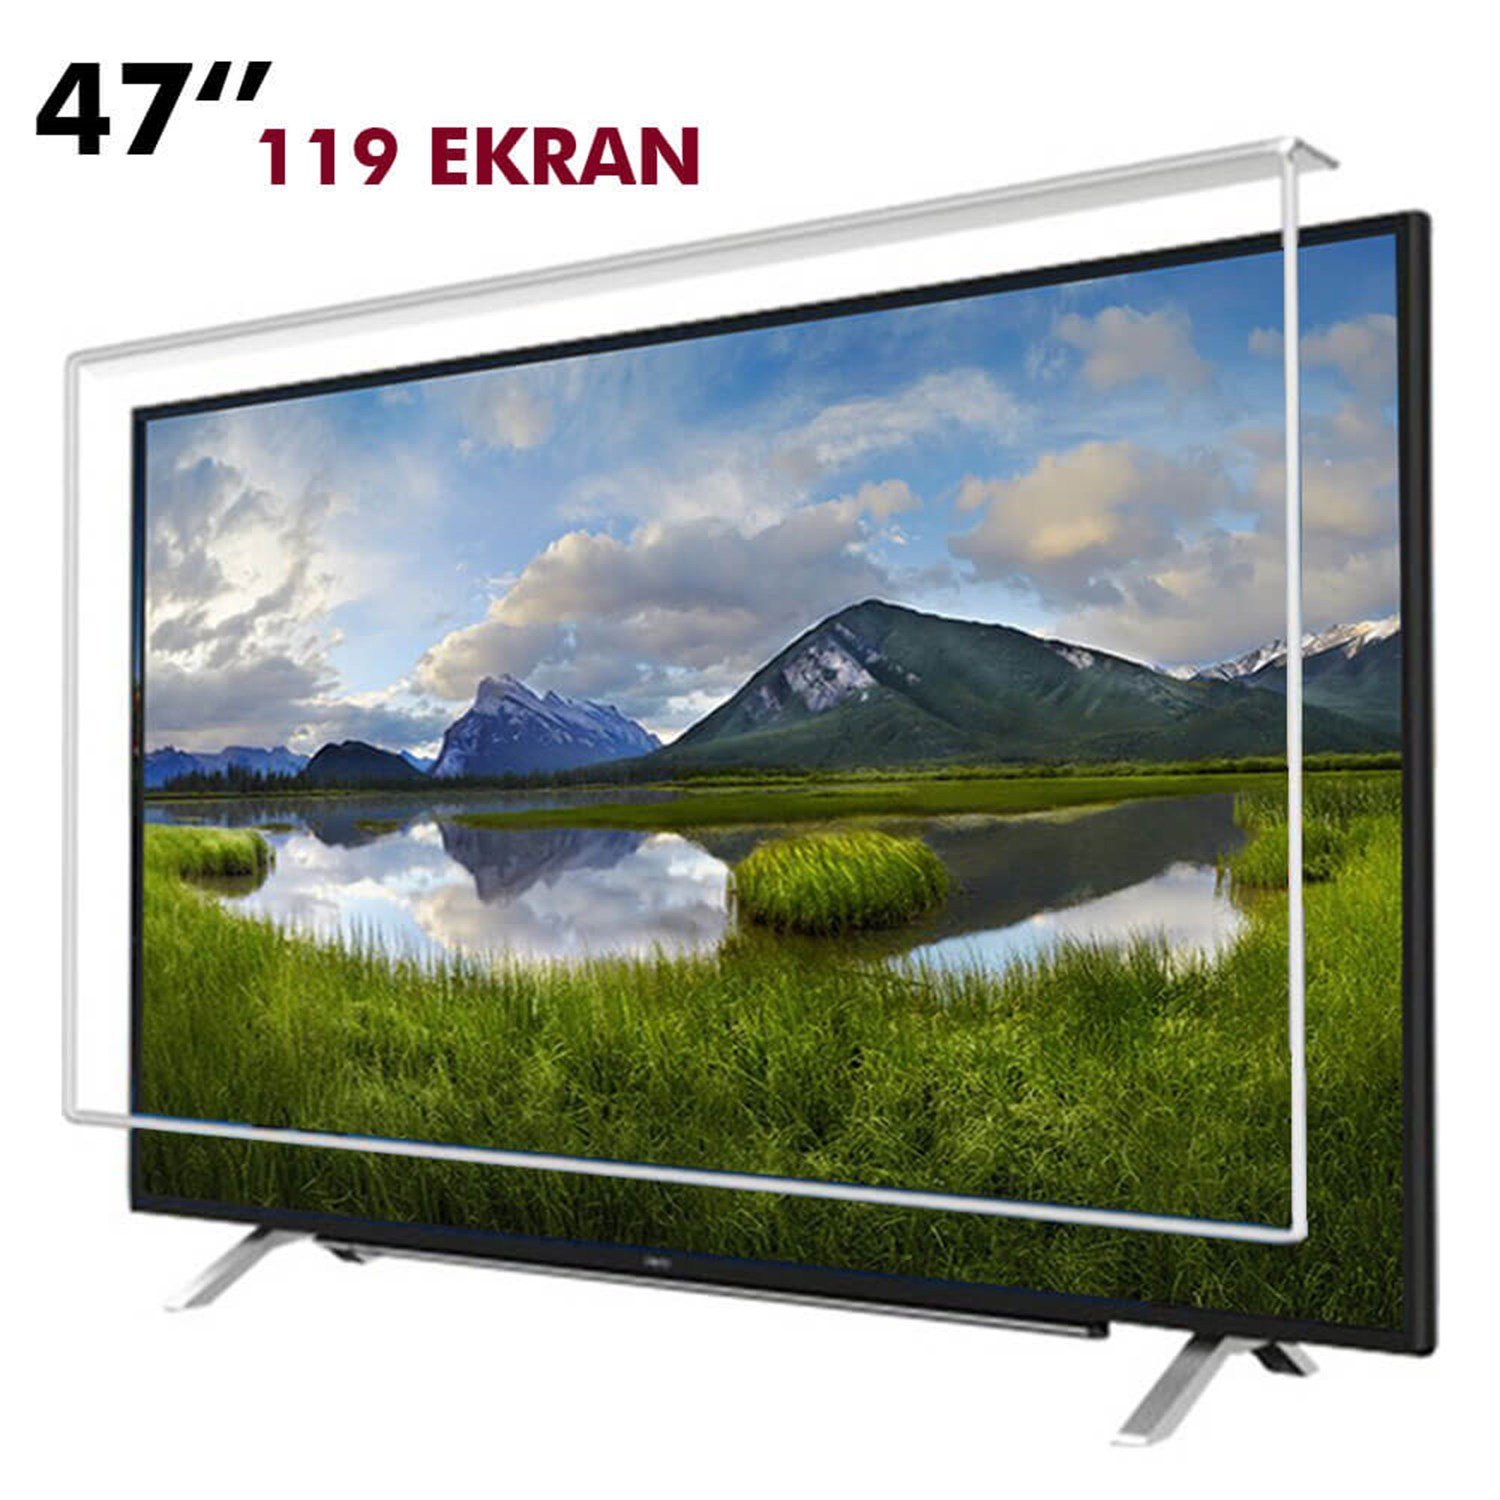 Tv Ekran Koruyucu 119 Ekran(47” inch) | Okularenkkat.com